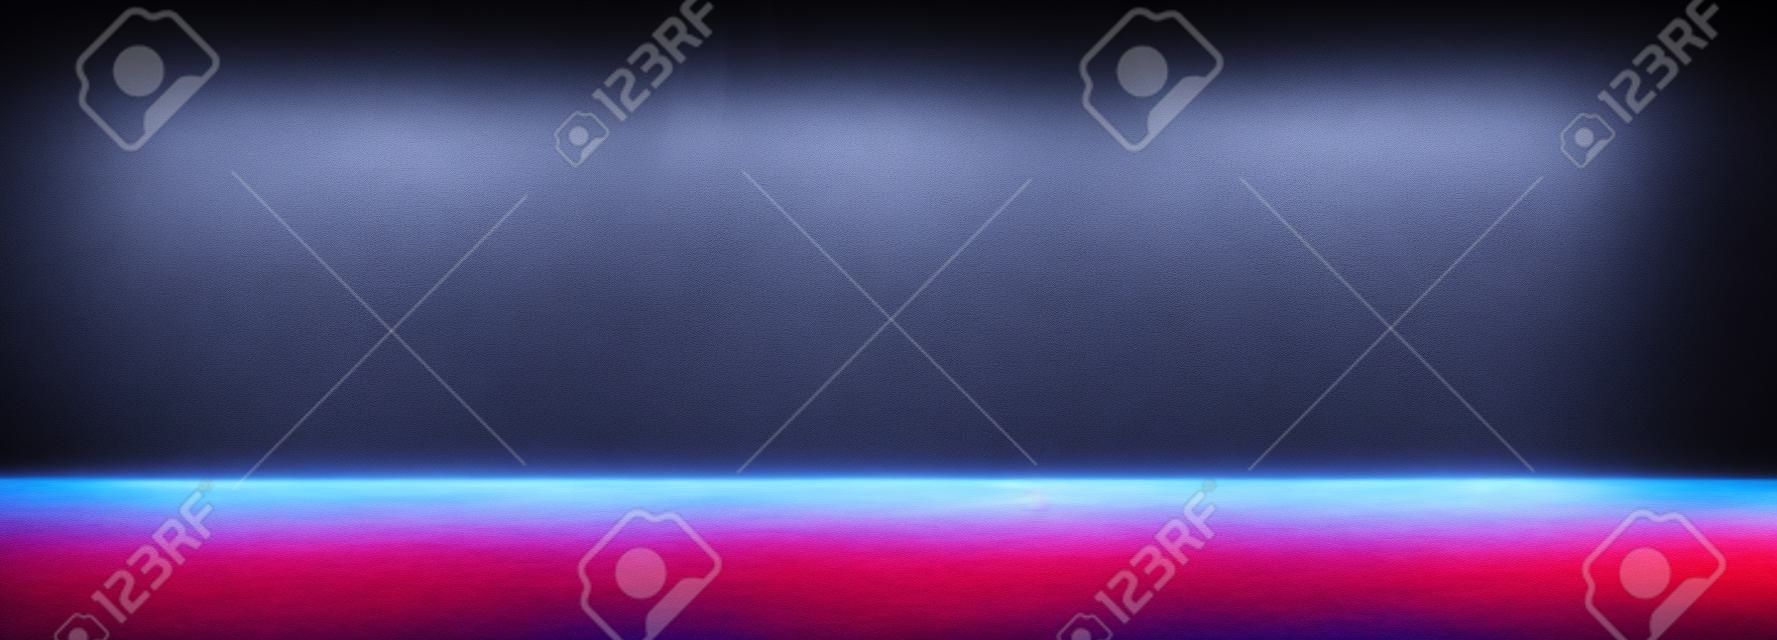 Espacio vacío de la habitación oscura Studio con niebla o neblina y efecto de iluminación rojo y azul sobre fondo degradado de suelo de hormigón.